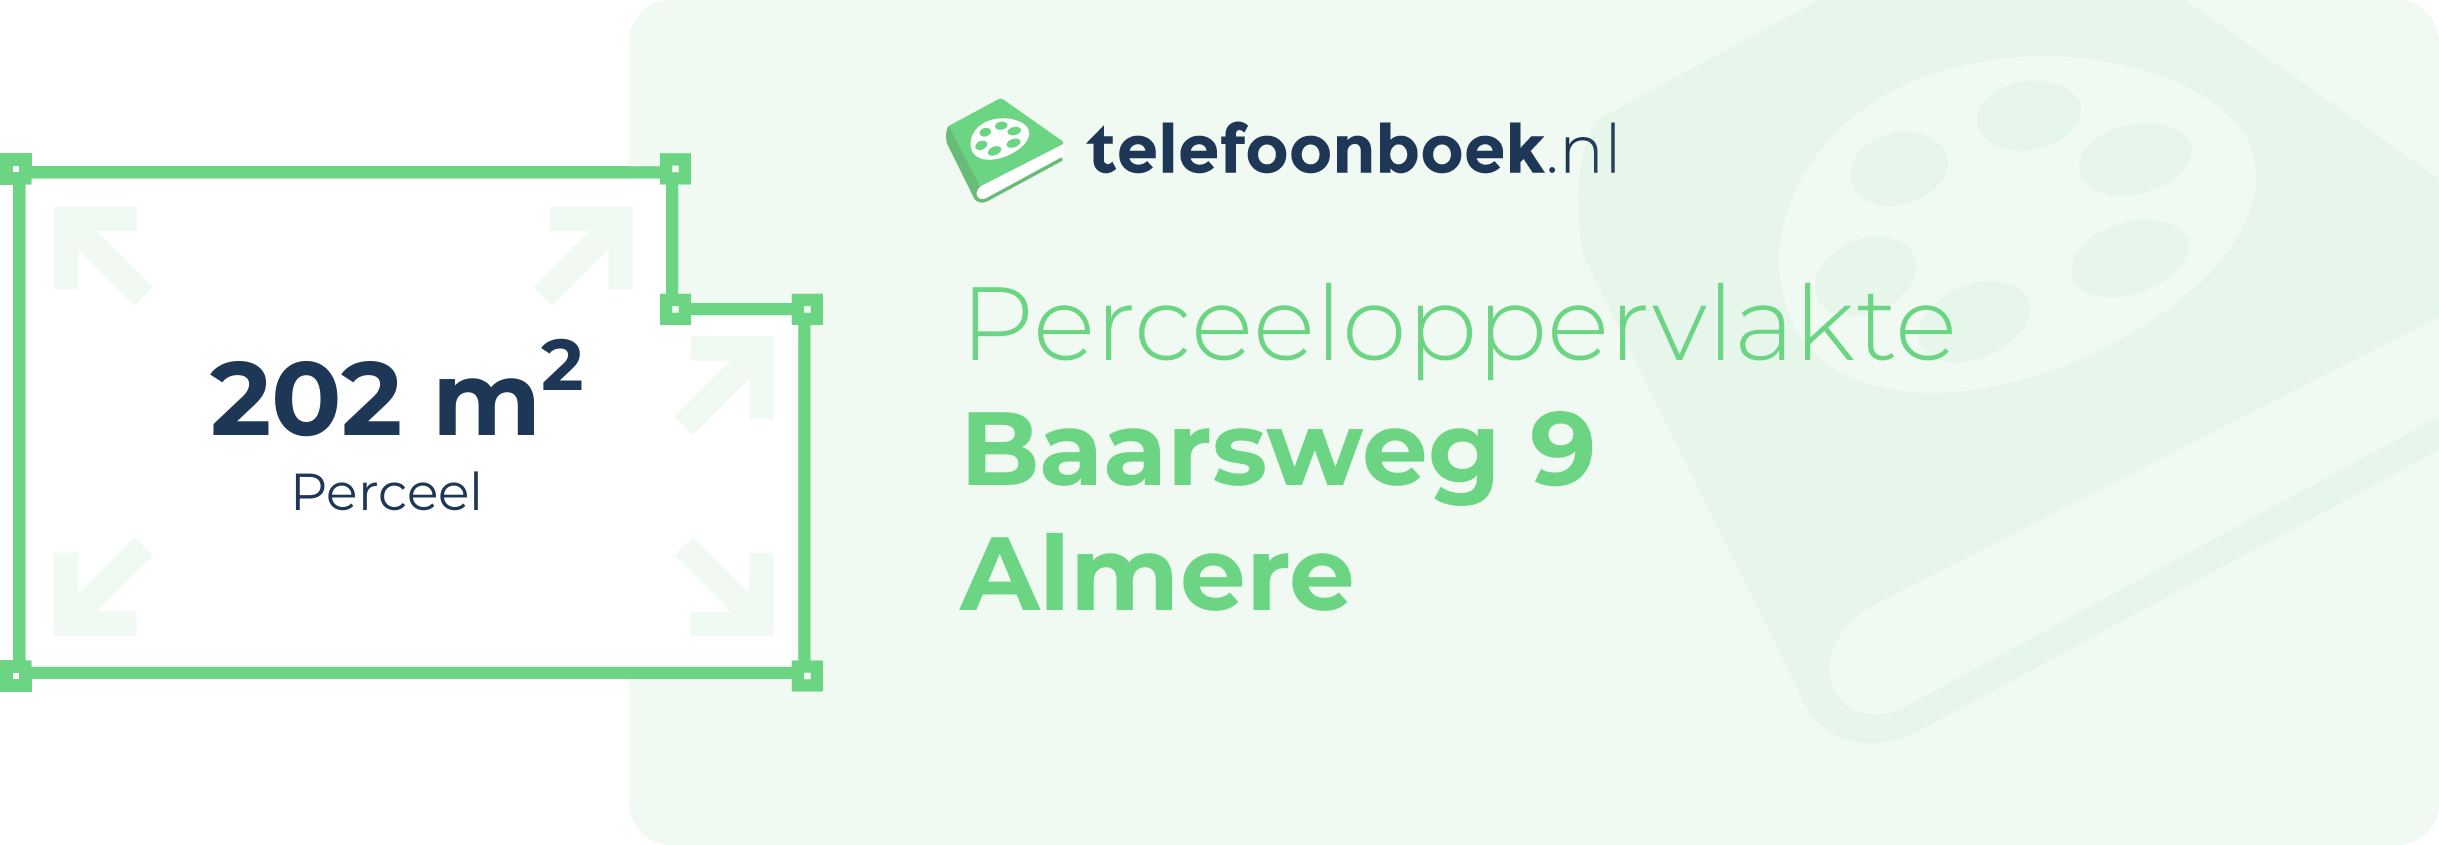 Perceeloppervlakte Baarsweg 9 Almere